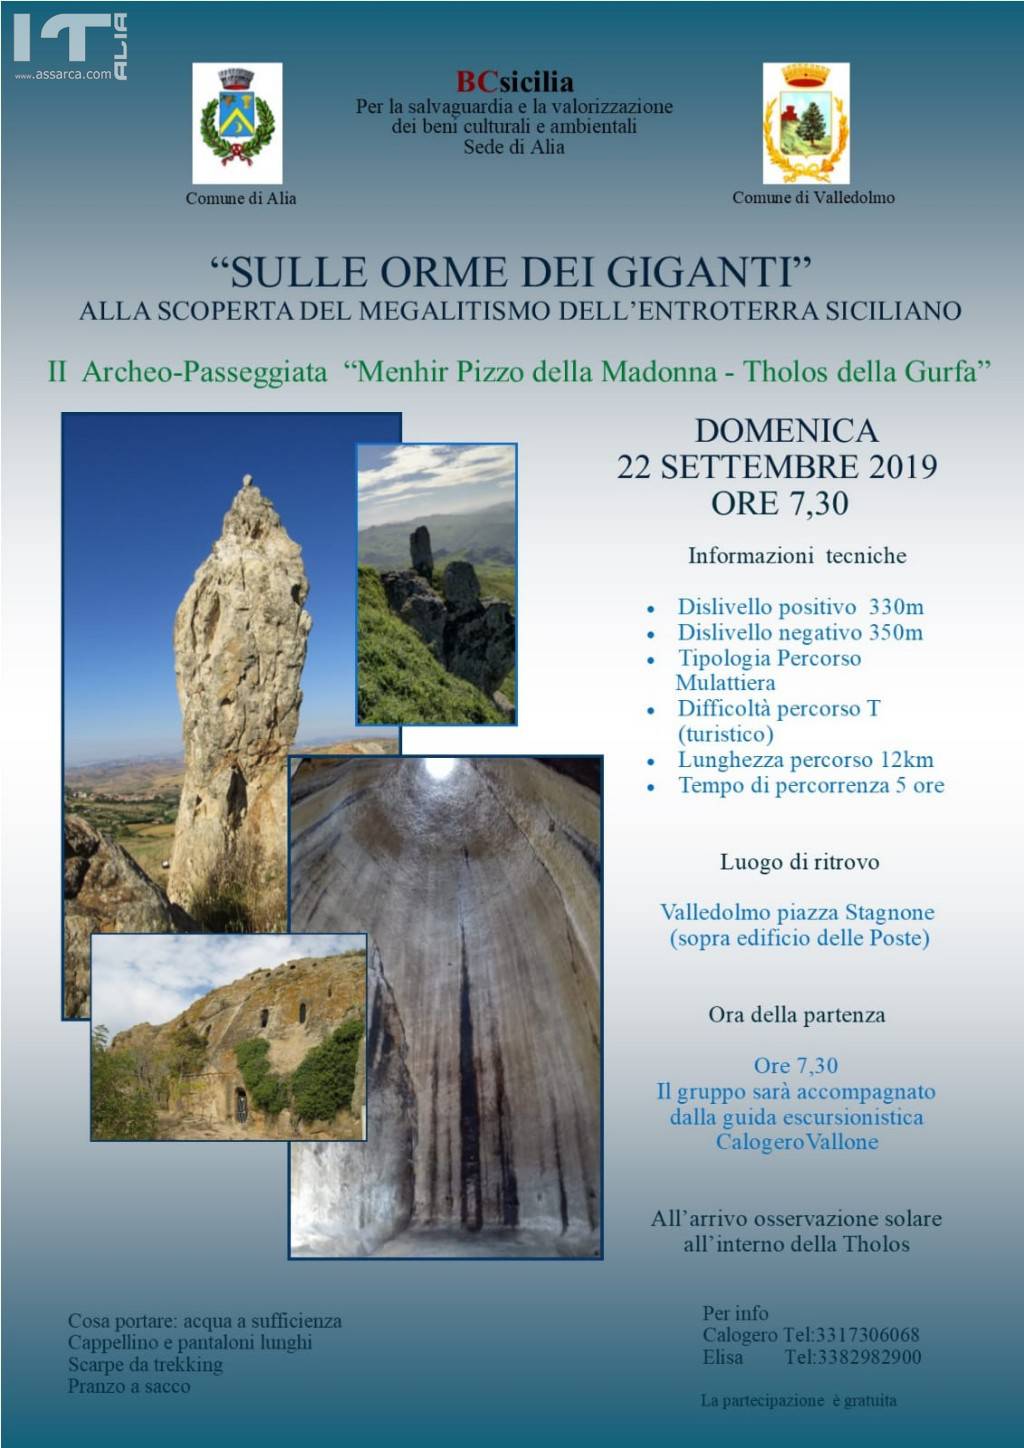 “SULLE ORME DEI GIGANTI”… alla scoperta del Megalitismo dell’entroterra siciliano